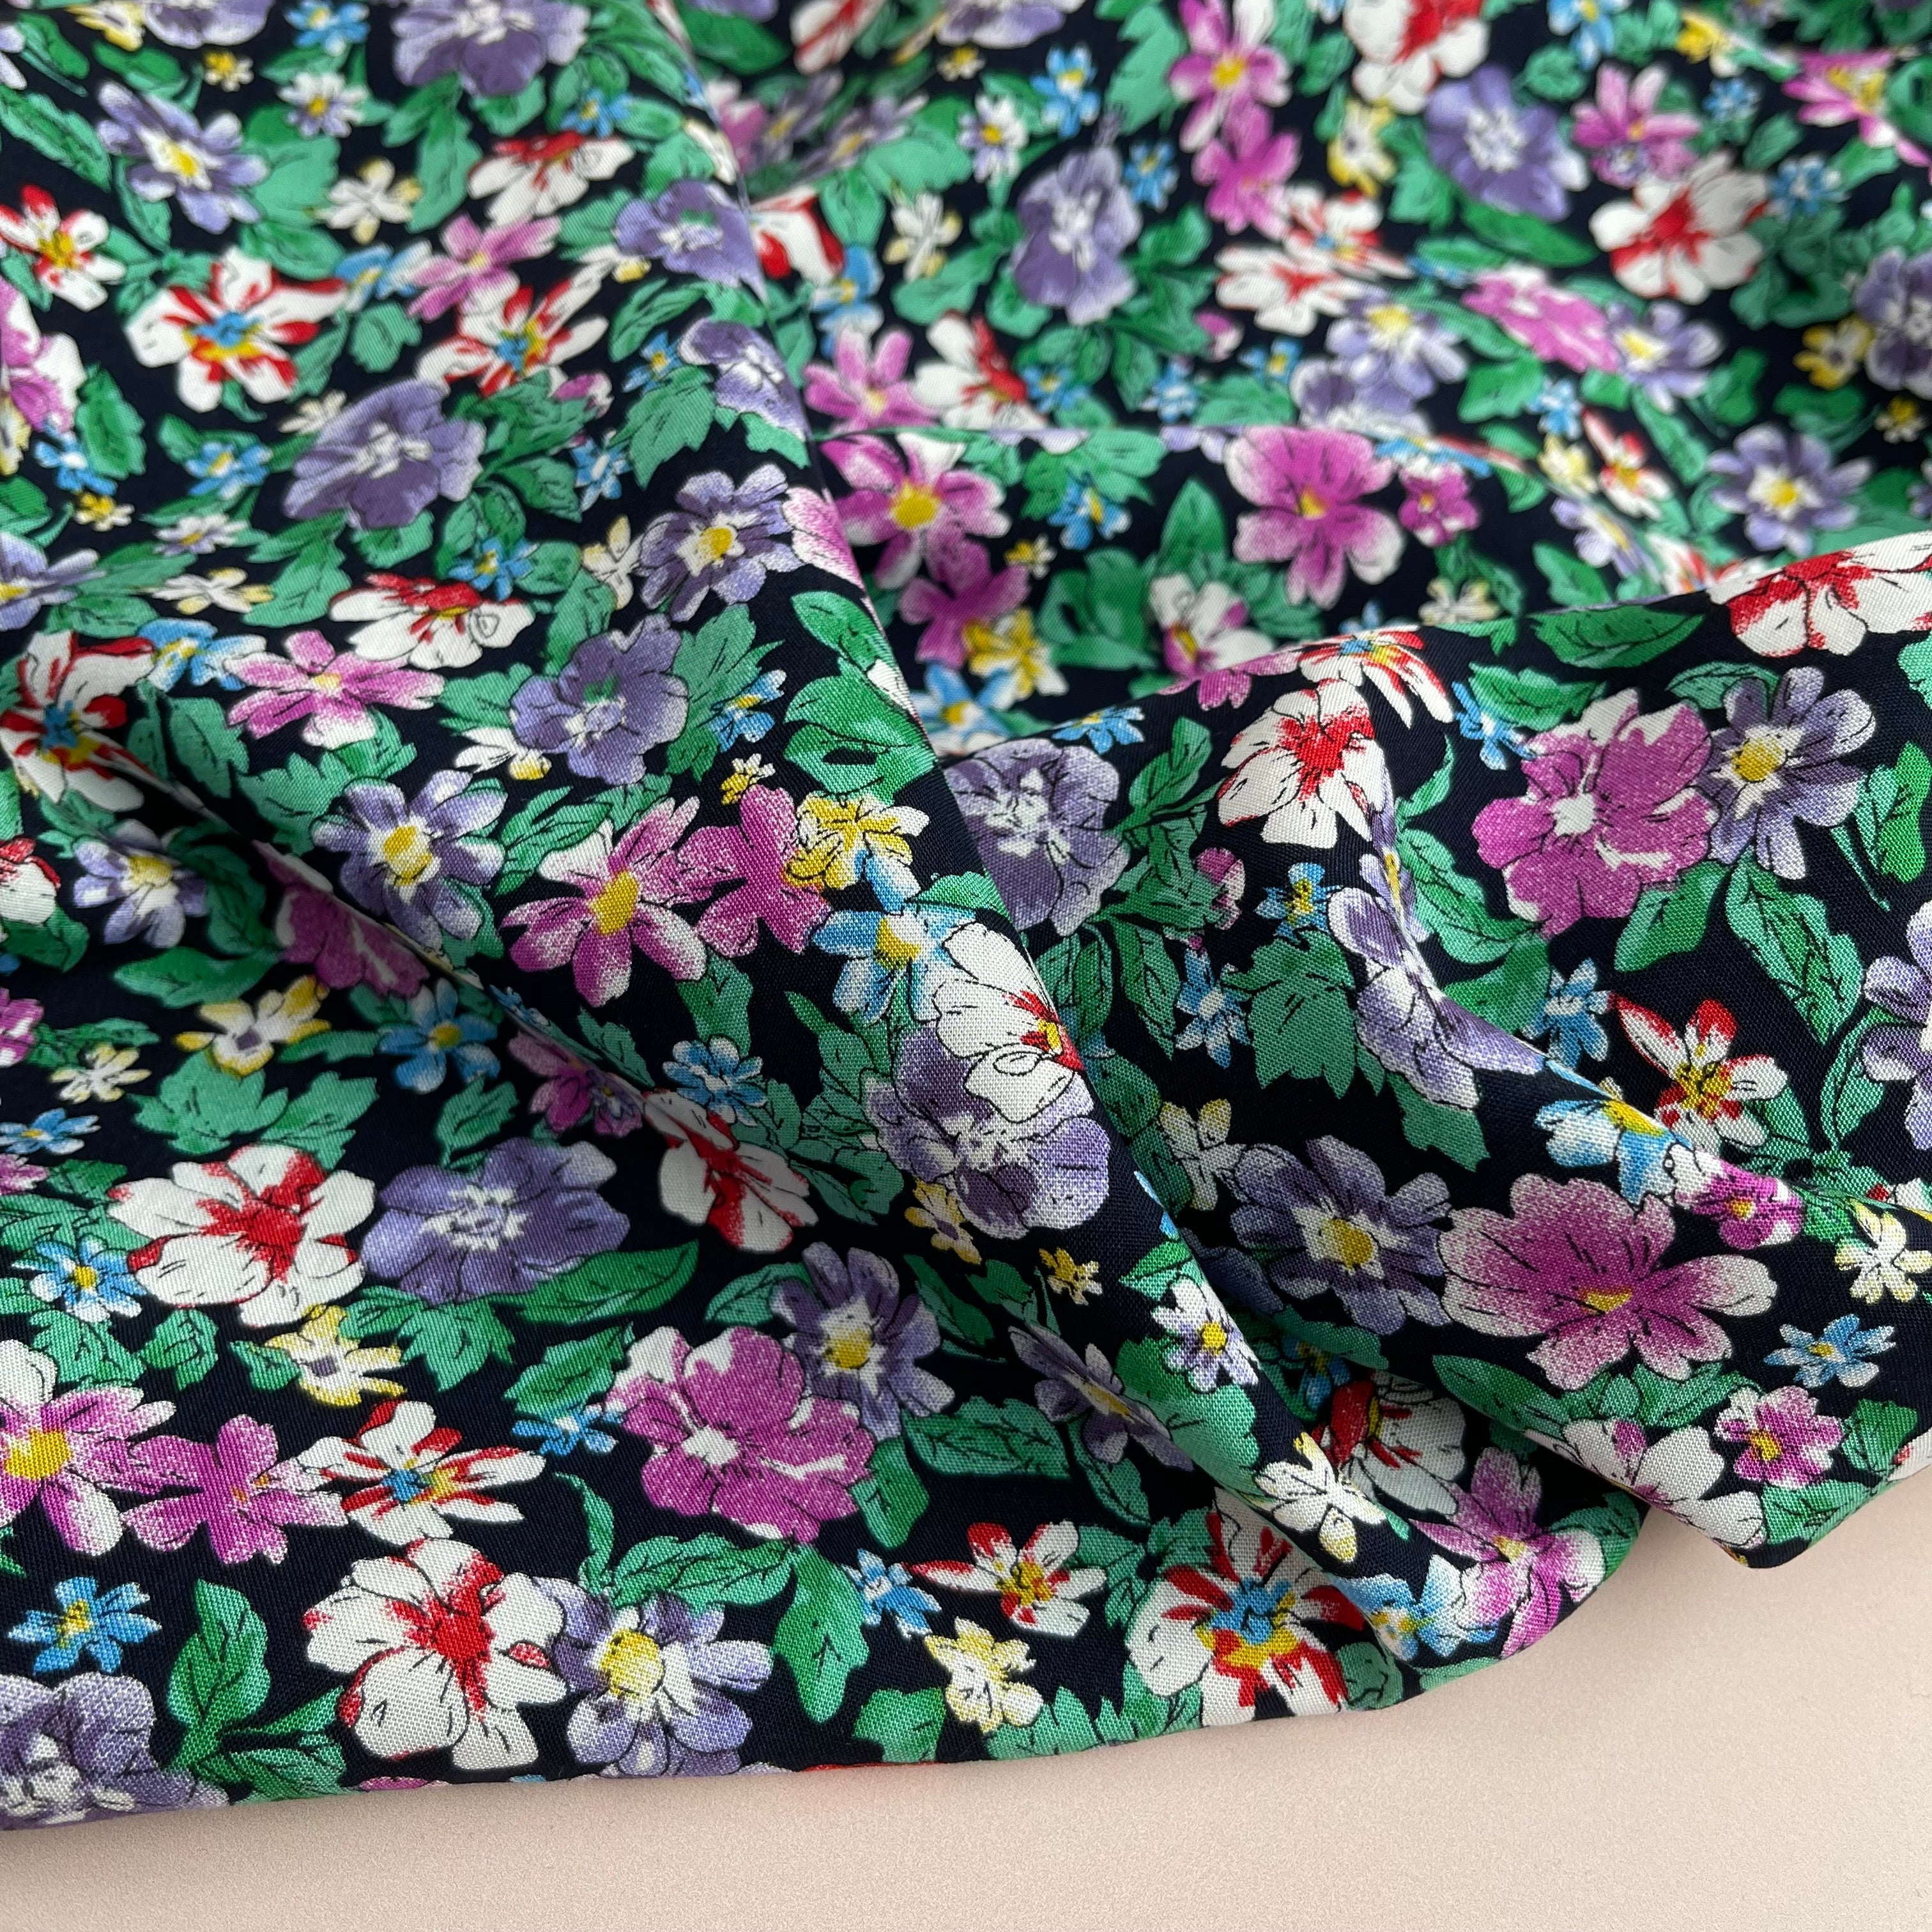 Zinna Emerald Viscose / Rayon Fabric